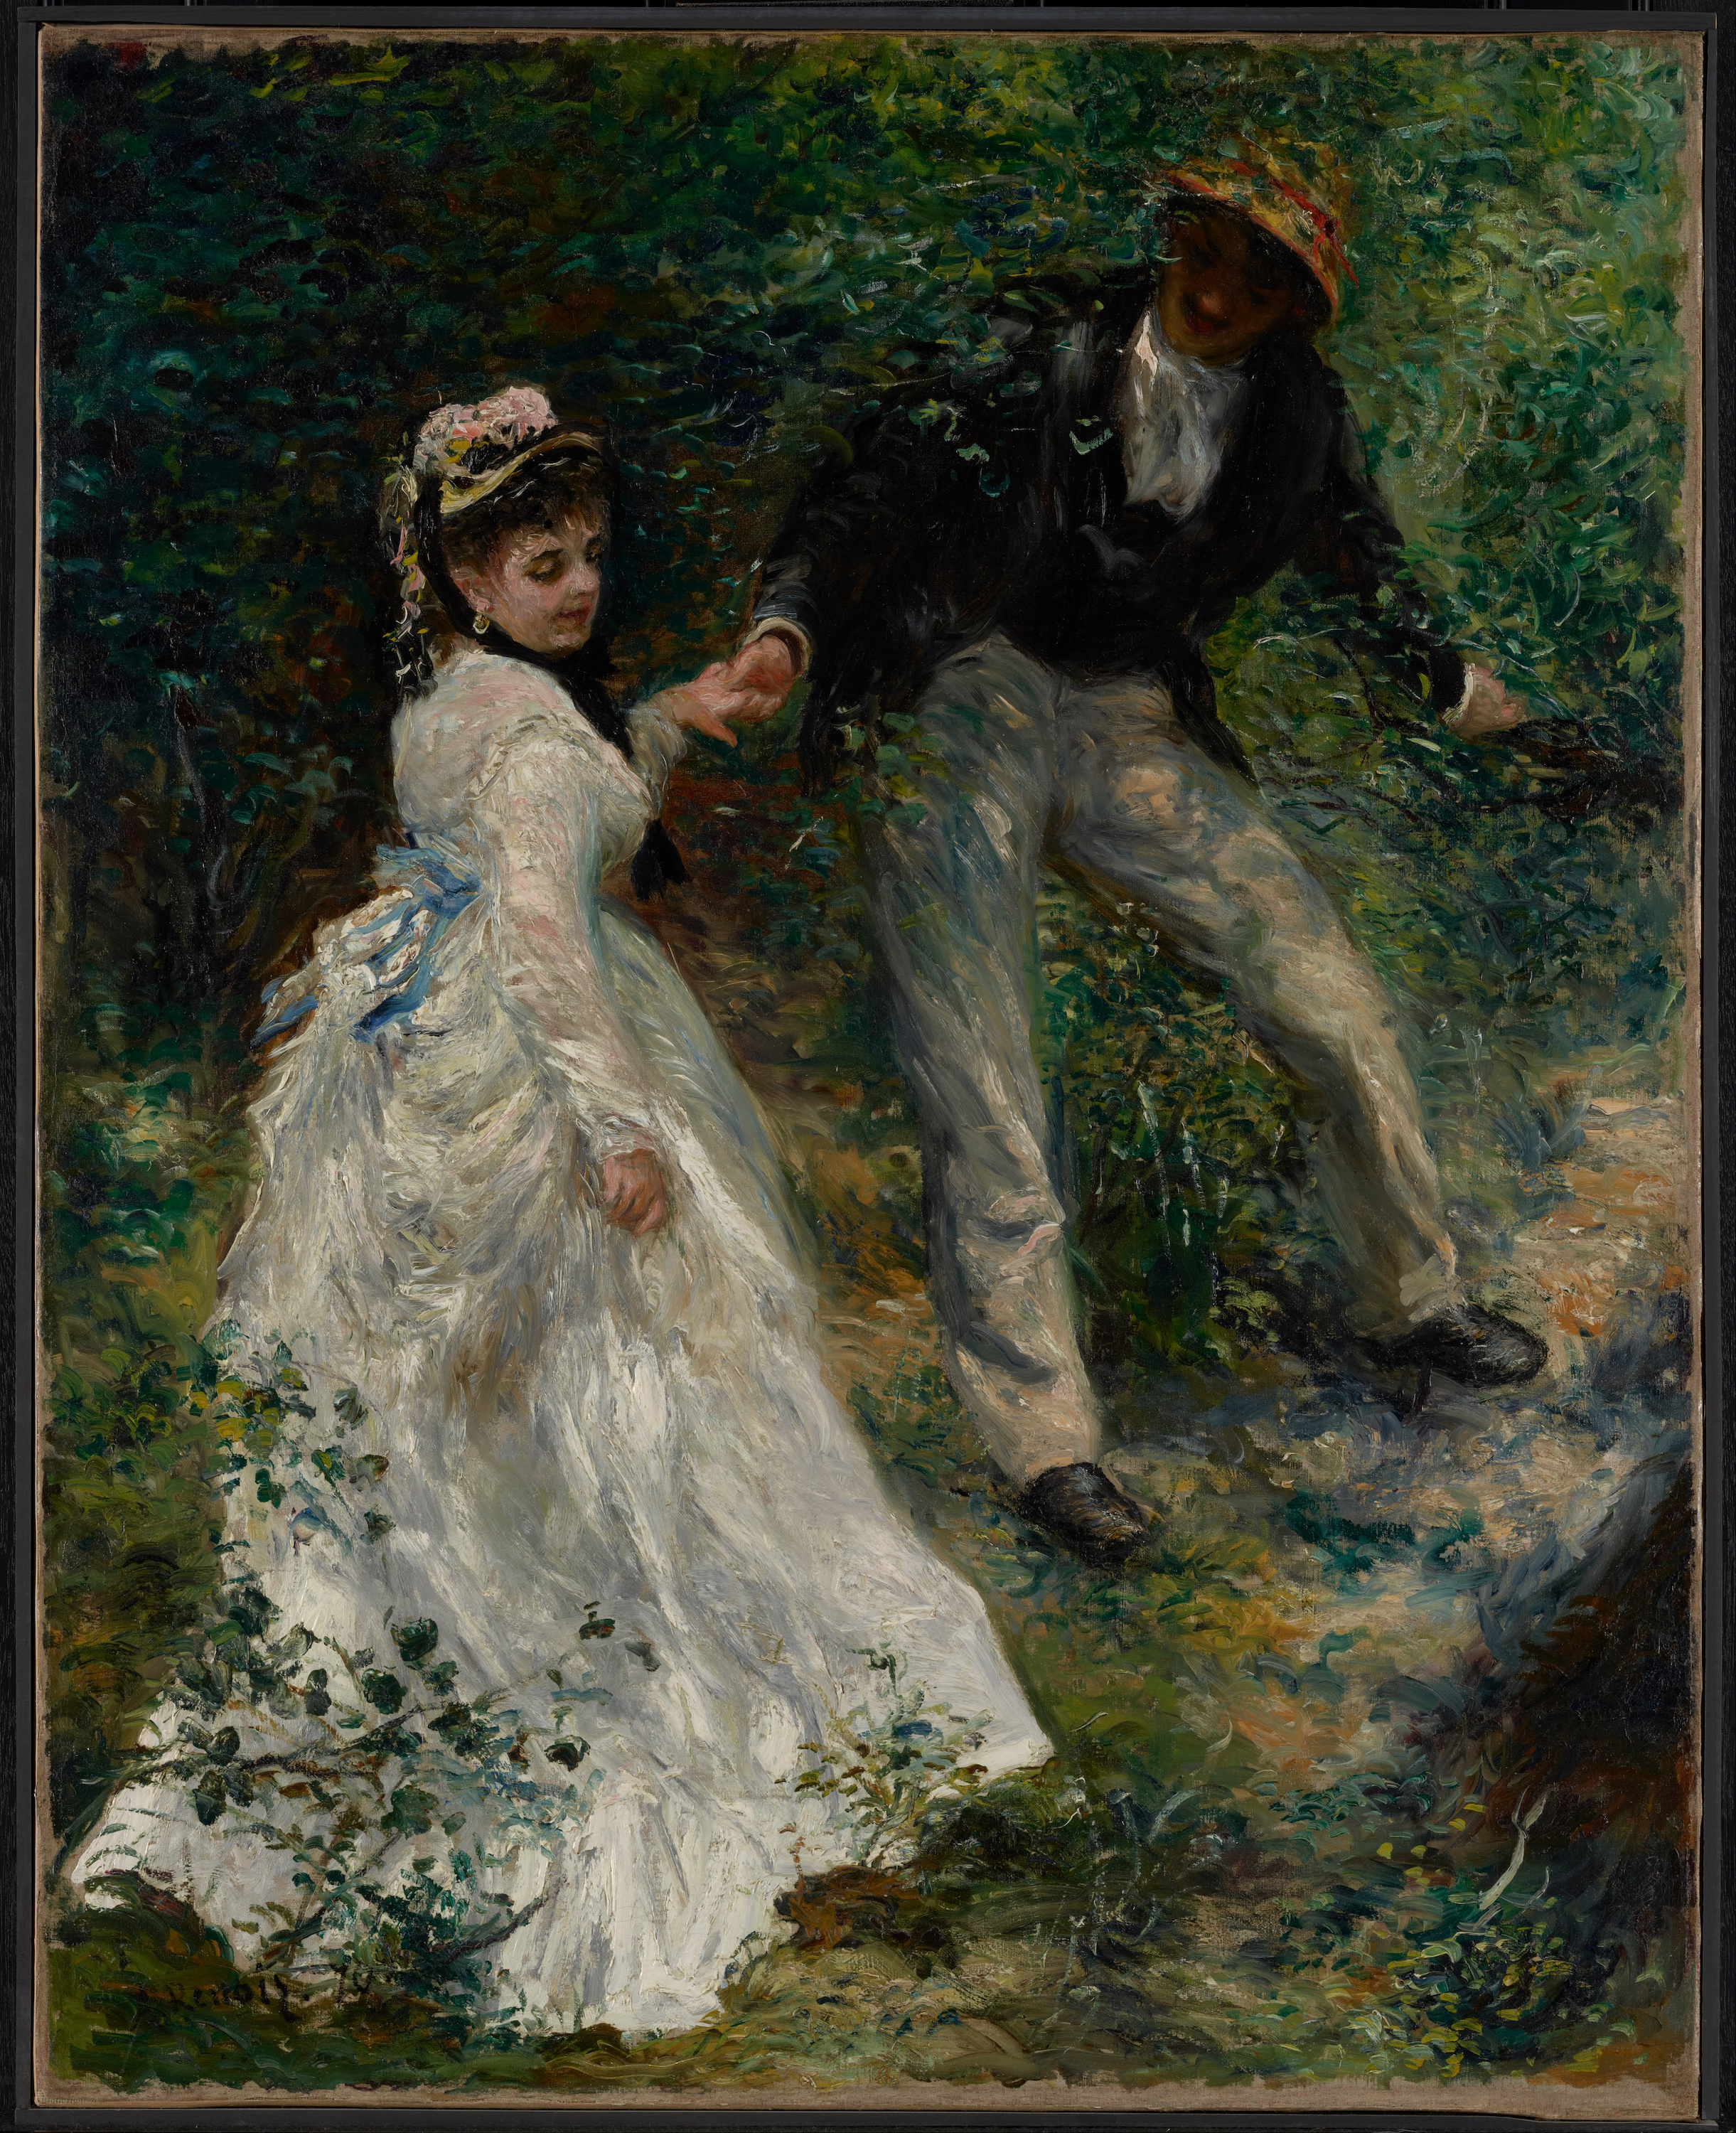 La Promenade by Pierre-Auguste Renoir - 1870 - 64.8 x 81.3 cm J. Paul Getty Museum